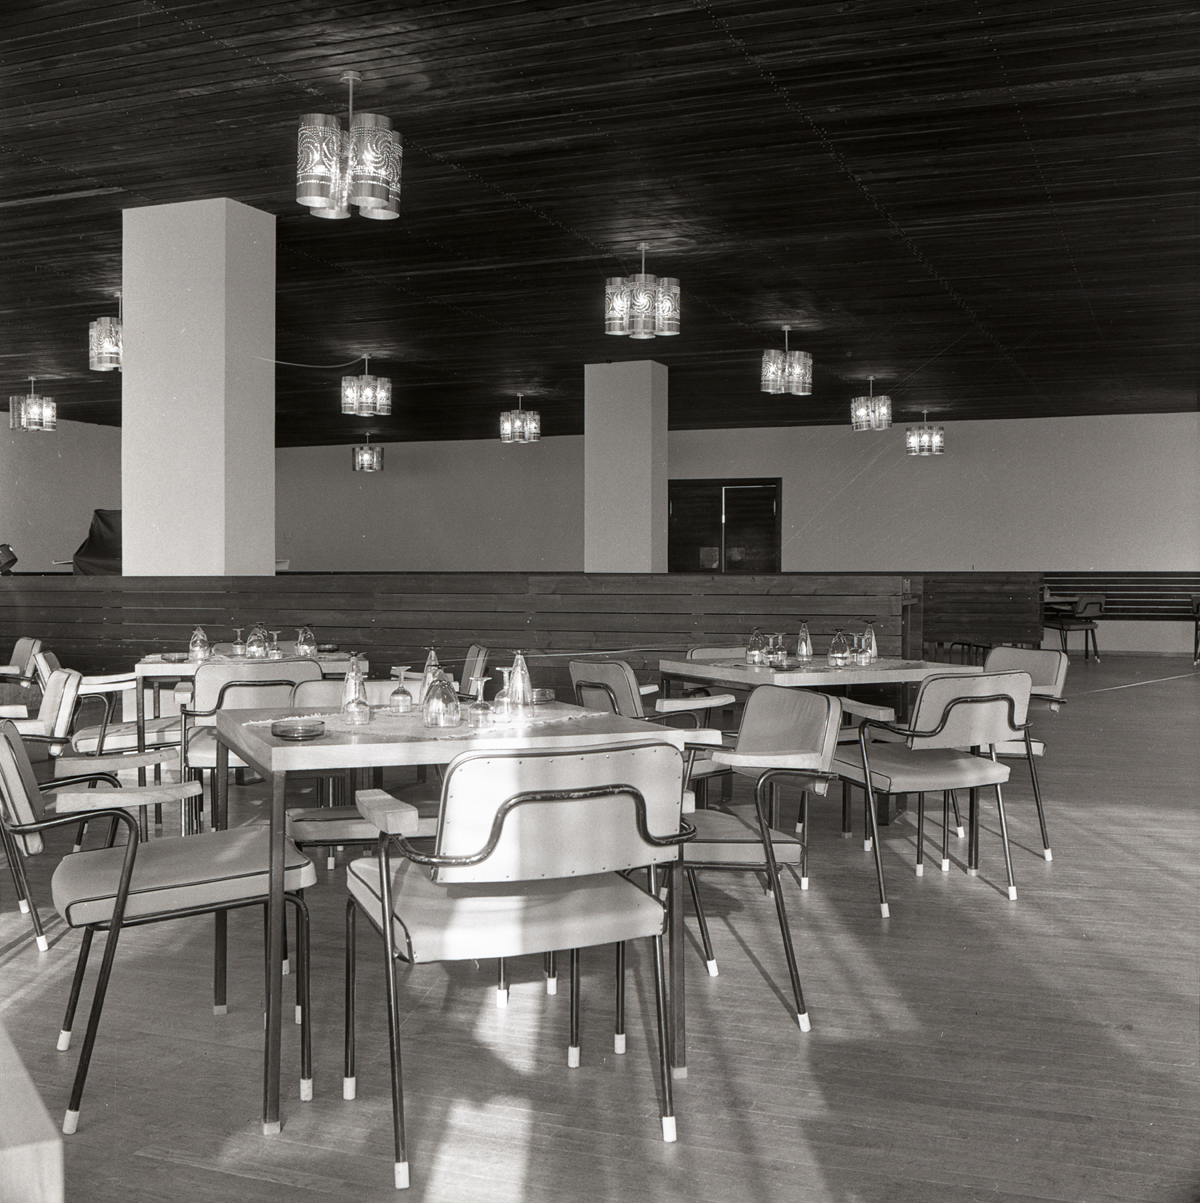 Kaubanduskeskus-restoran Paides, restoranisaal. Arhitekt Koidu Lassmann